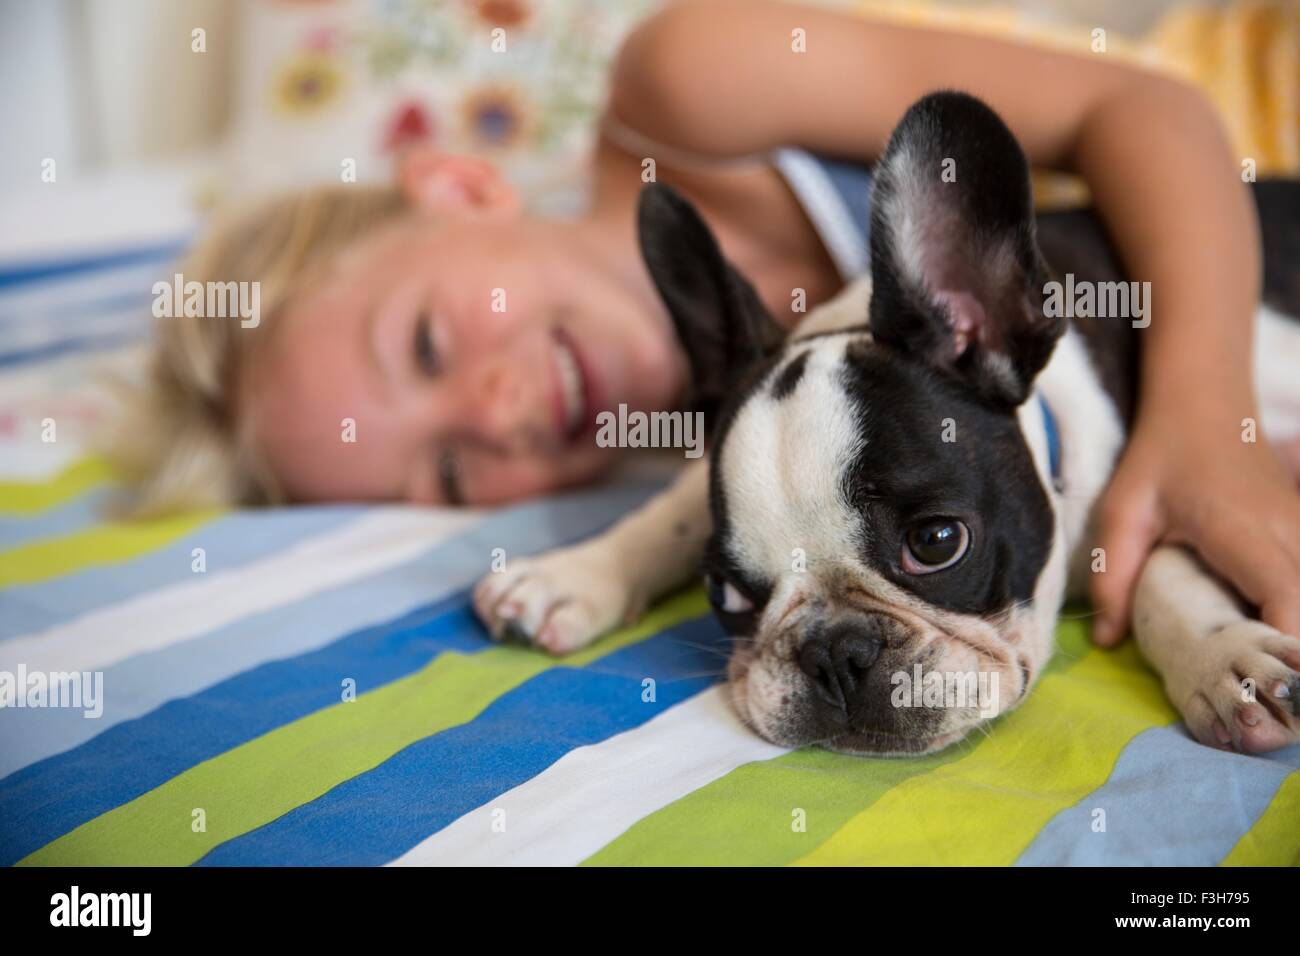 Portrait de chien mignon et girl lying on bed Banque D'Images